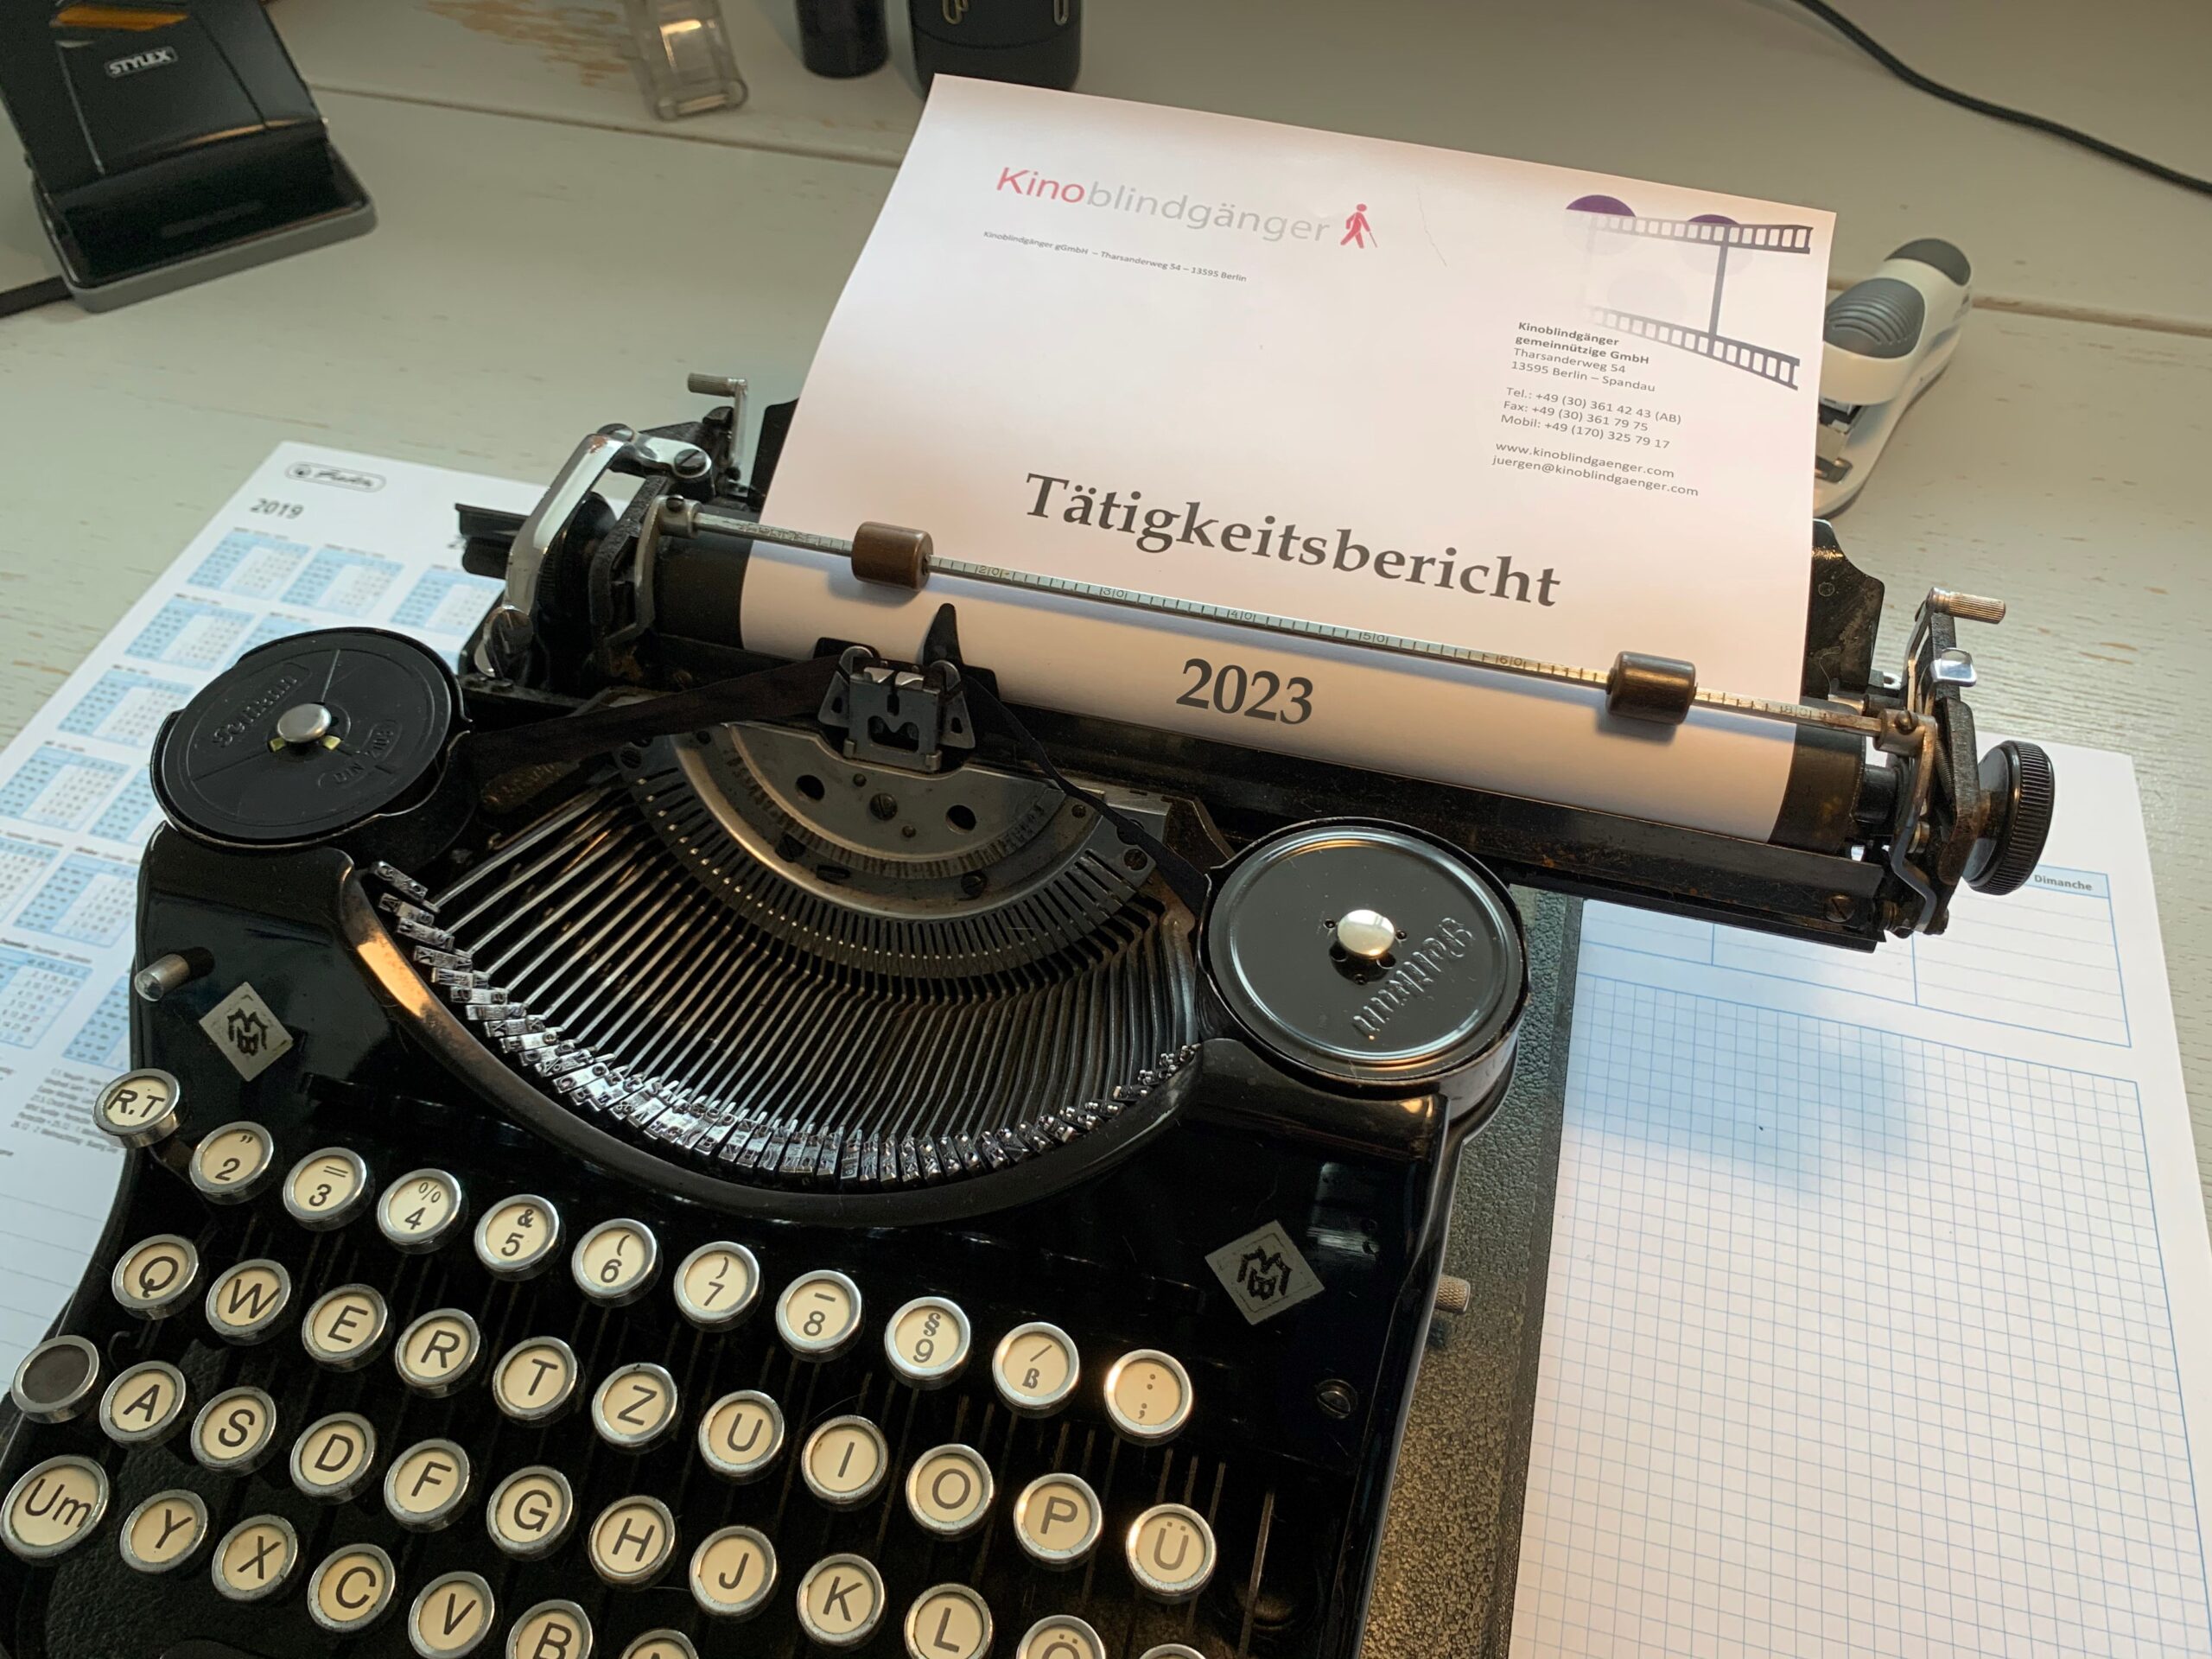 Eine alte schwarze Schreibmaschine mit Typenhebeln und Farbband. Eingespannt ist der Briefbogen der Kinoblindgänger mit der Überschrift "Tätigkeitsbericht 2023".